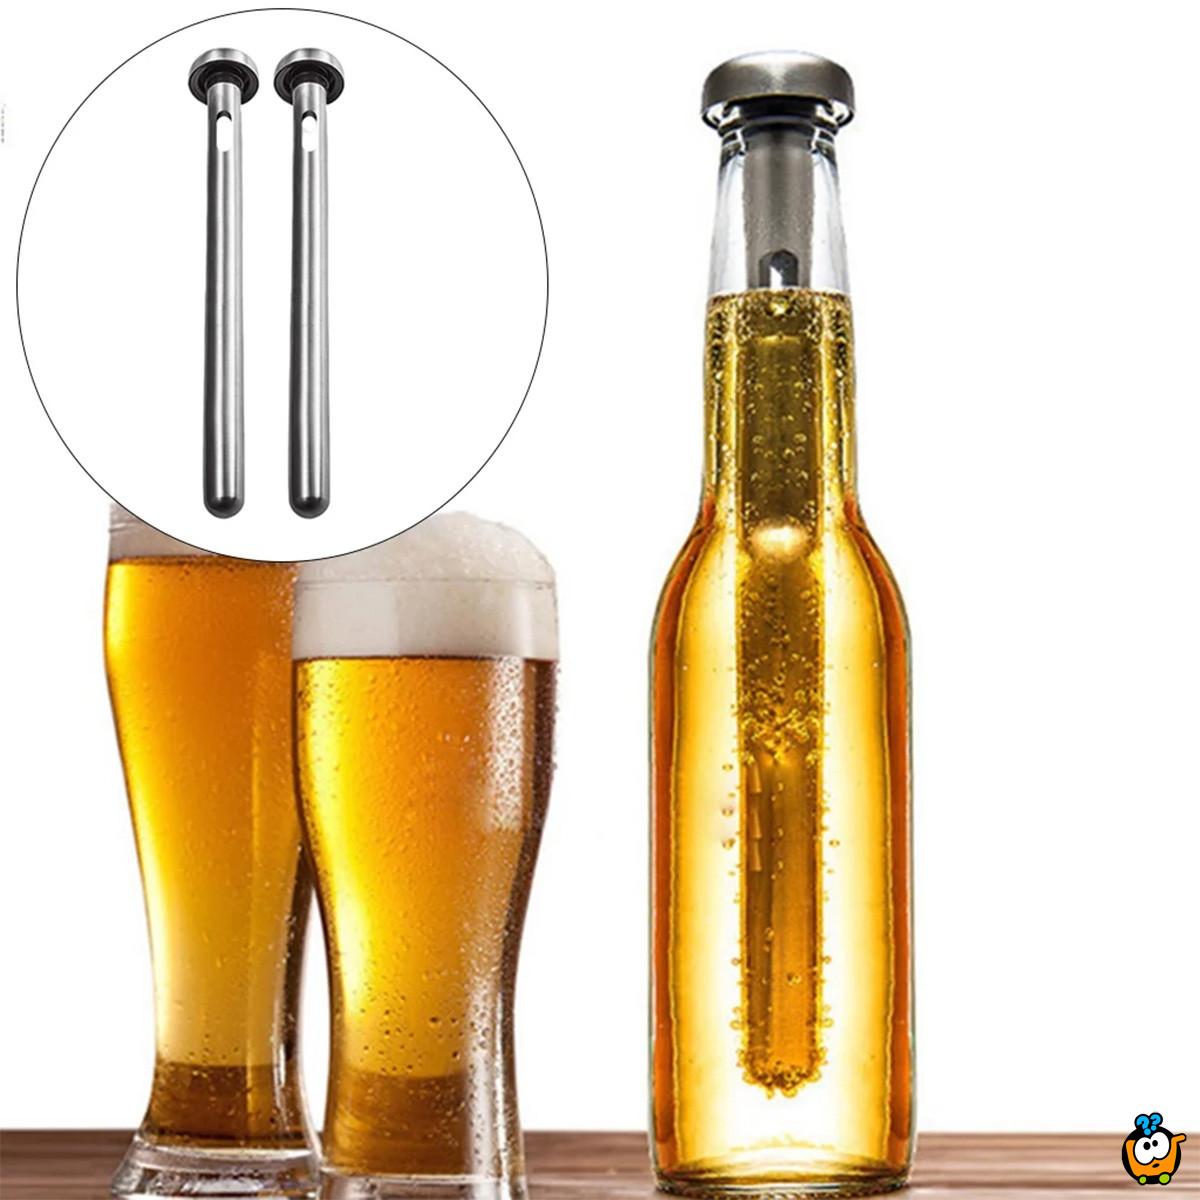 Štap za hlađenje pića - Super poklon ljubitelje piva